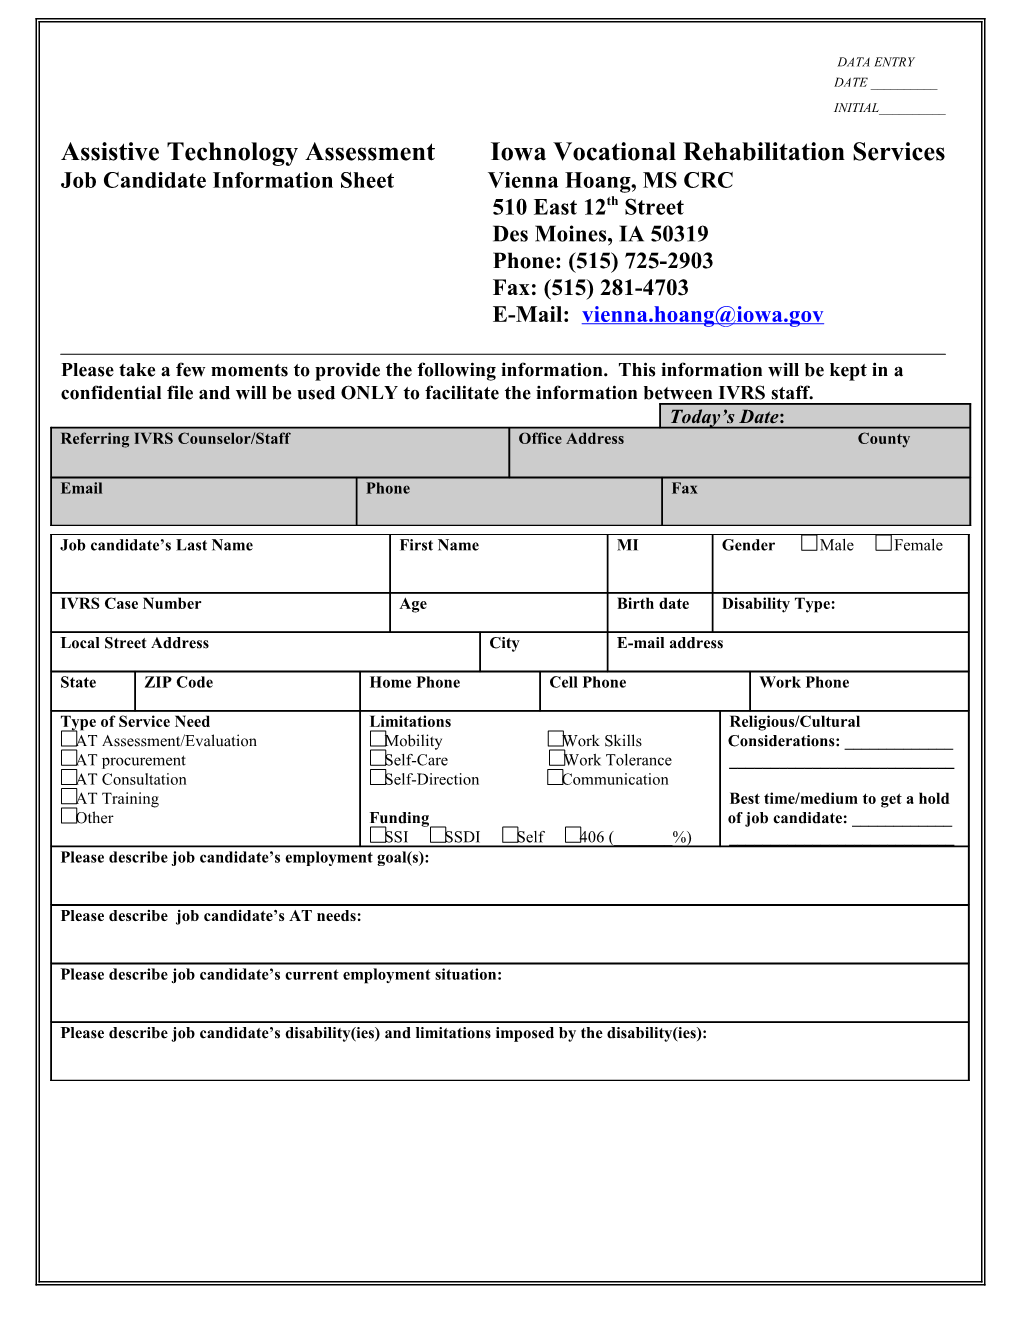 Job Candidate Information Sheet Vienna Hoang, MS CRC